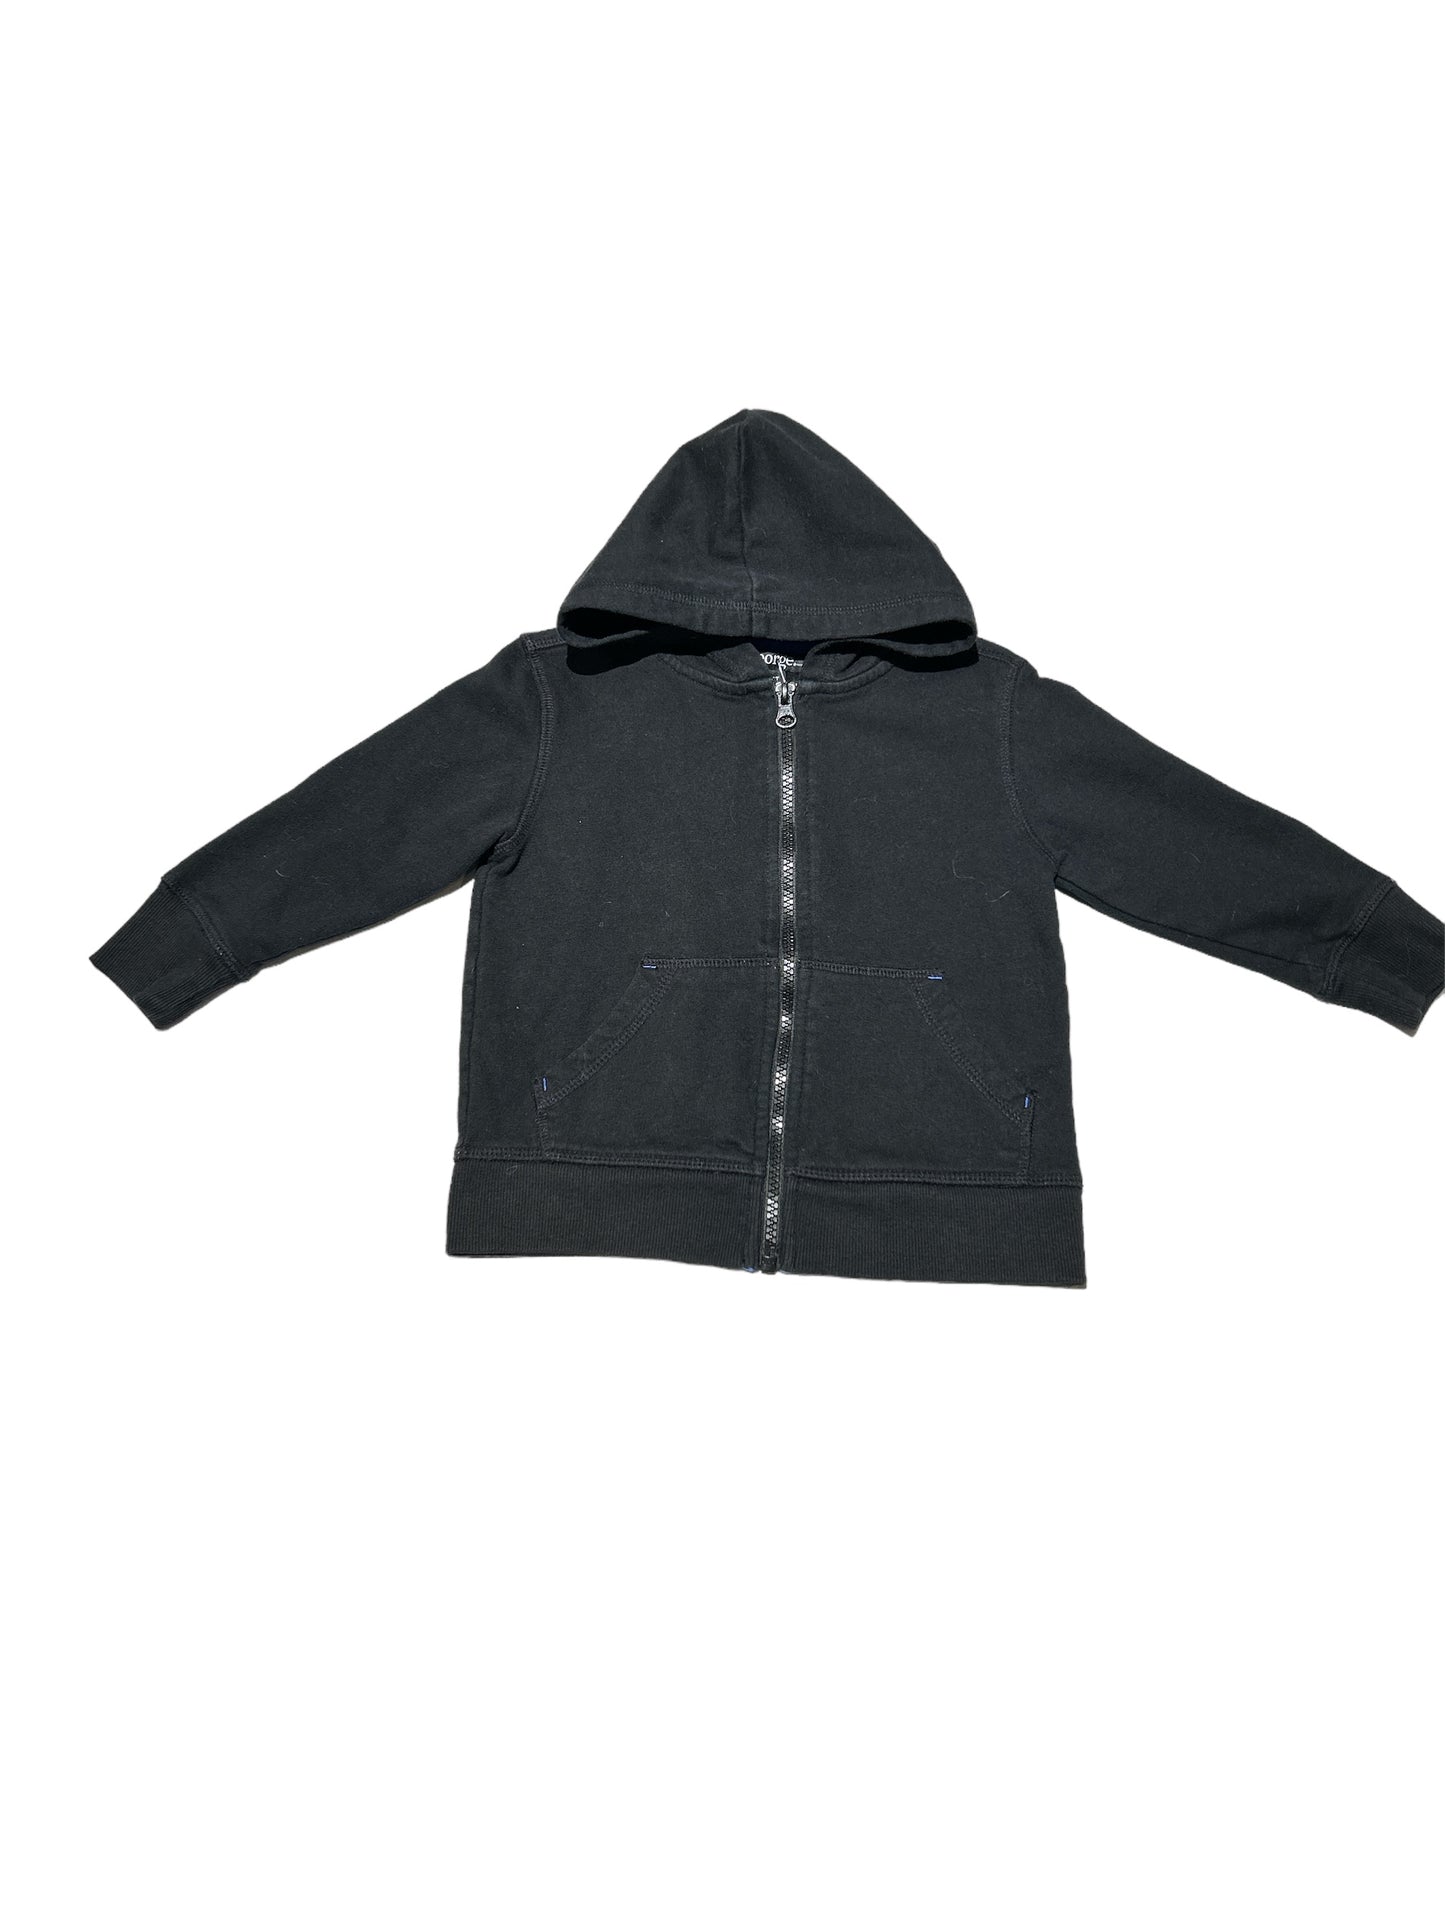 Black hoodie. 3T